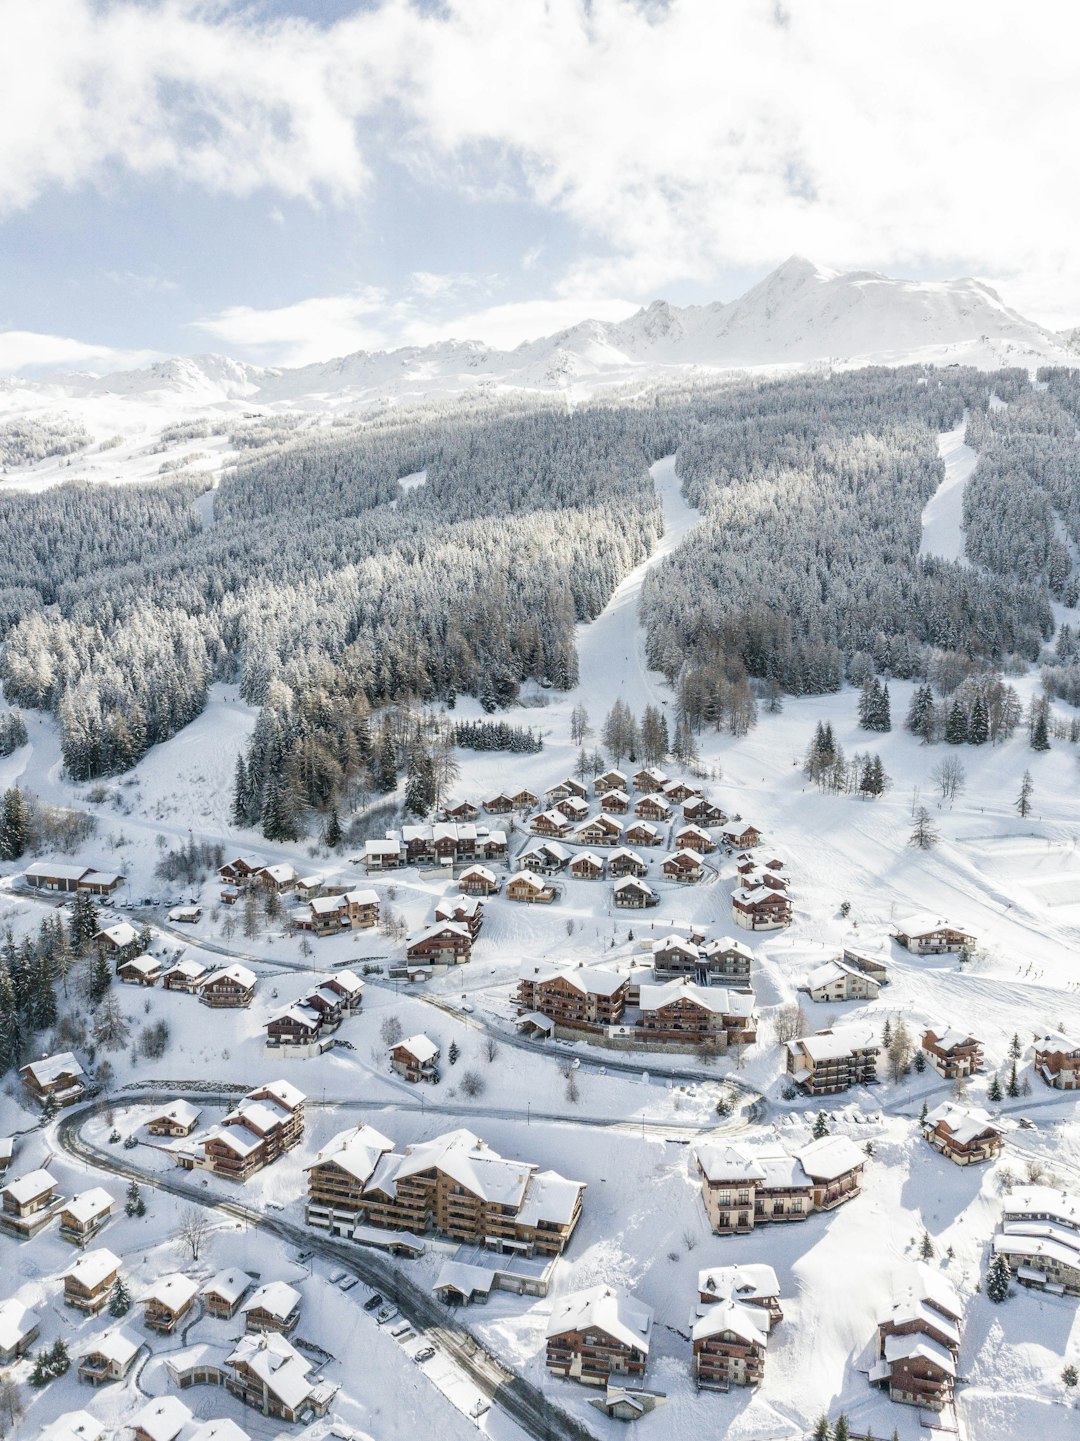 Ski resort photo spot Peisey-Nancroix La Plagne